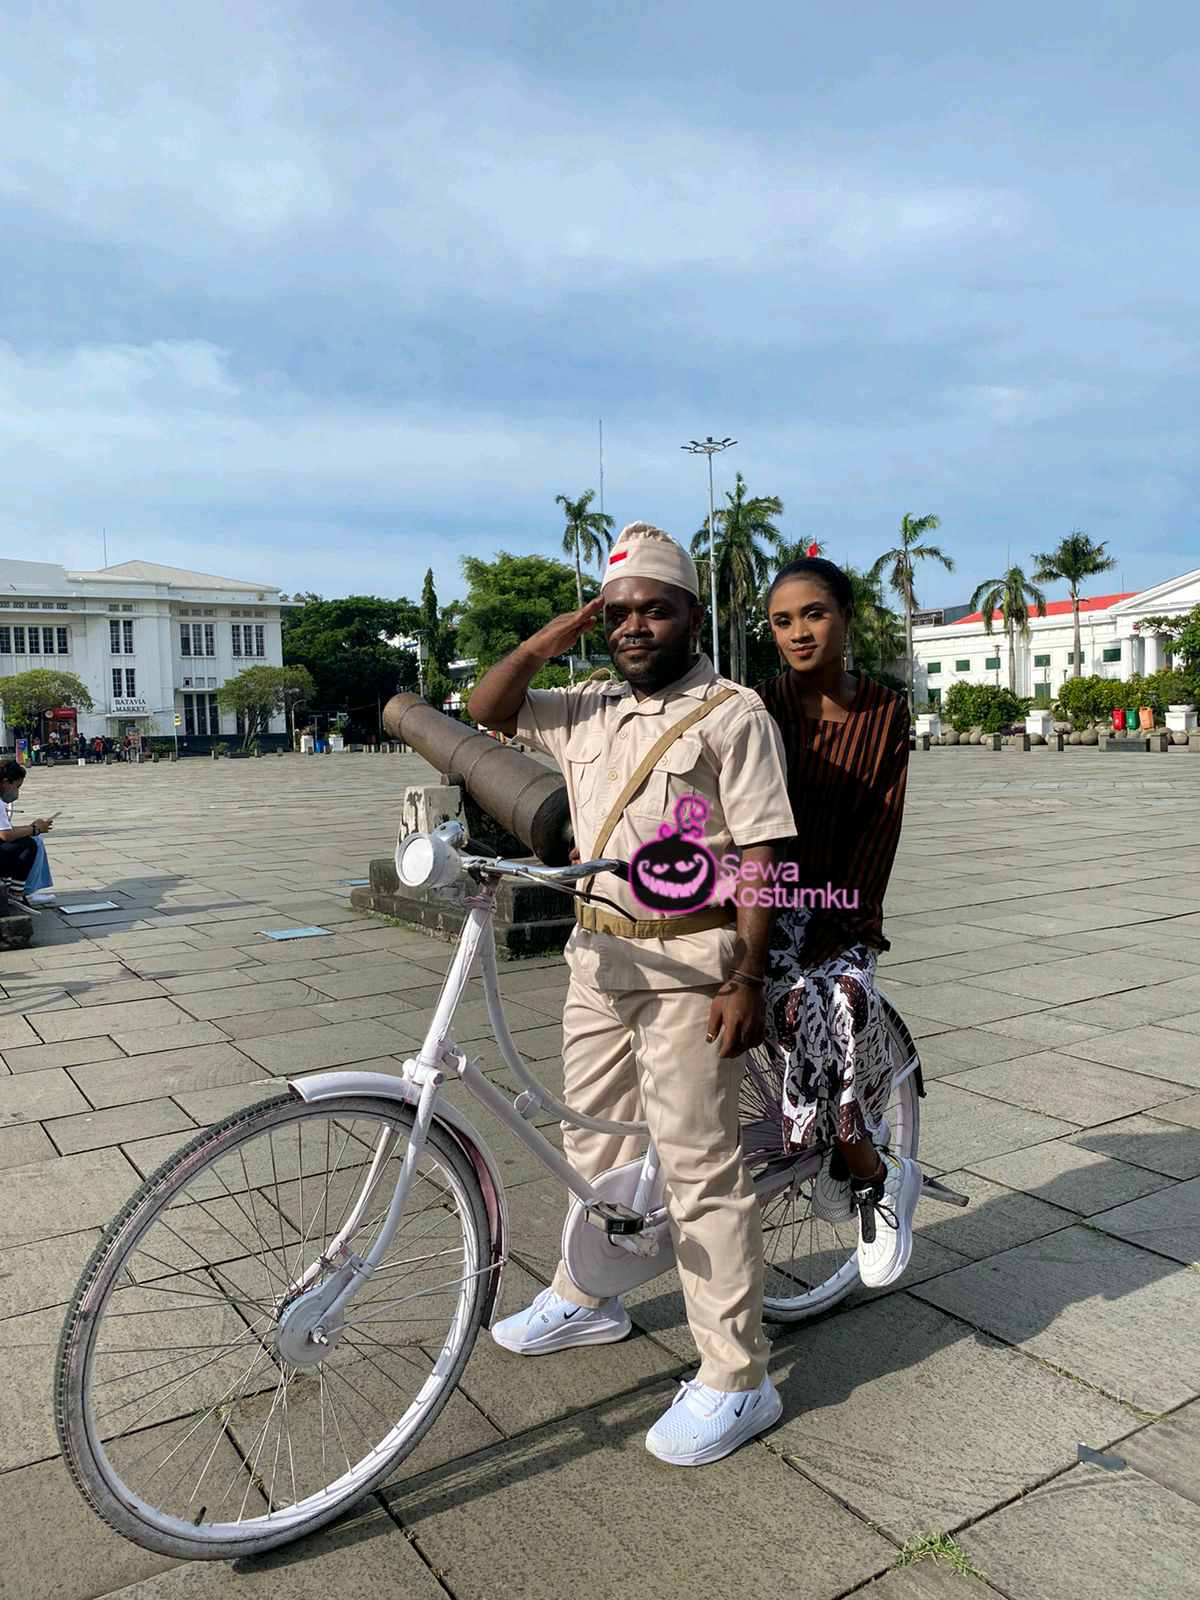 Jasa Sewa Kostum Pejuang di Penjaringan Jakarta Utara